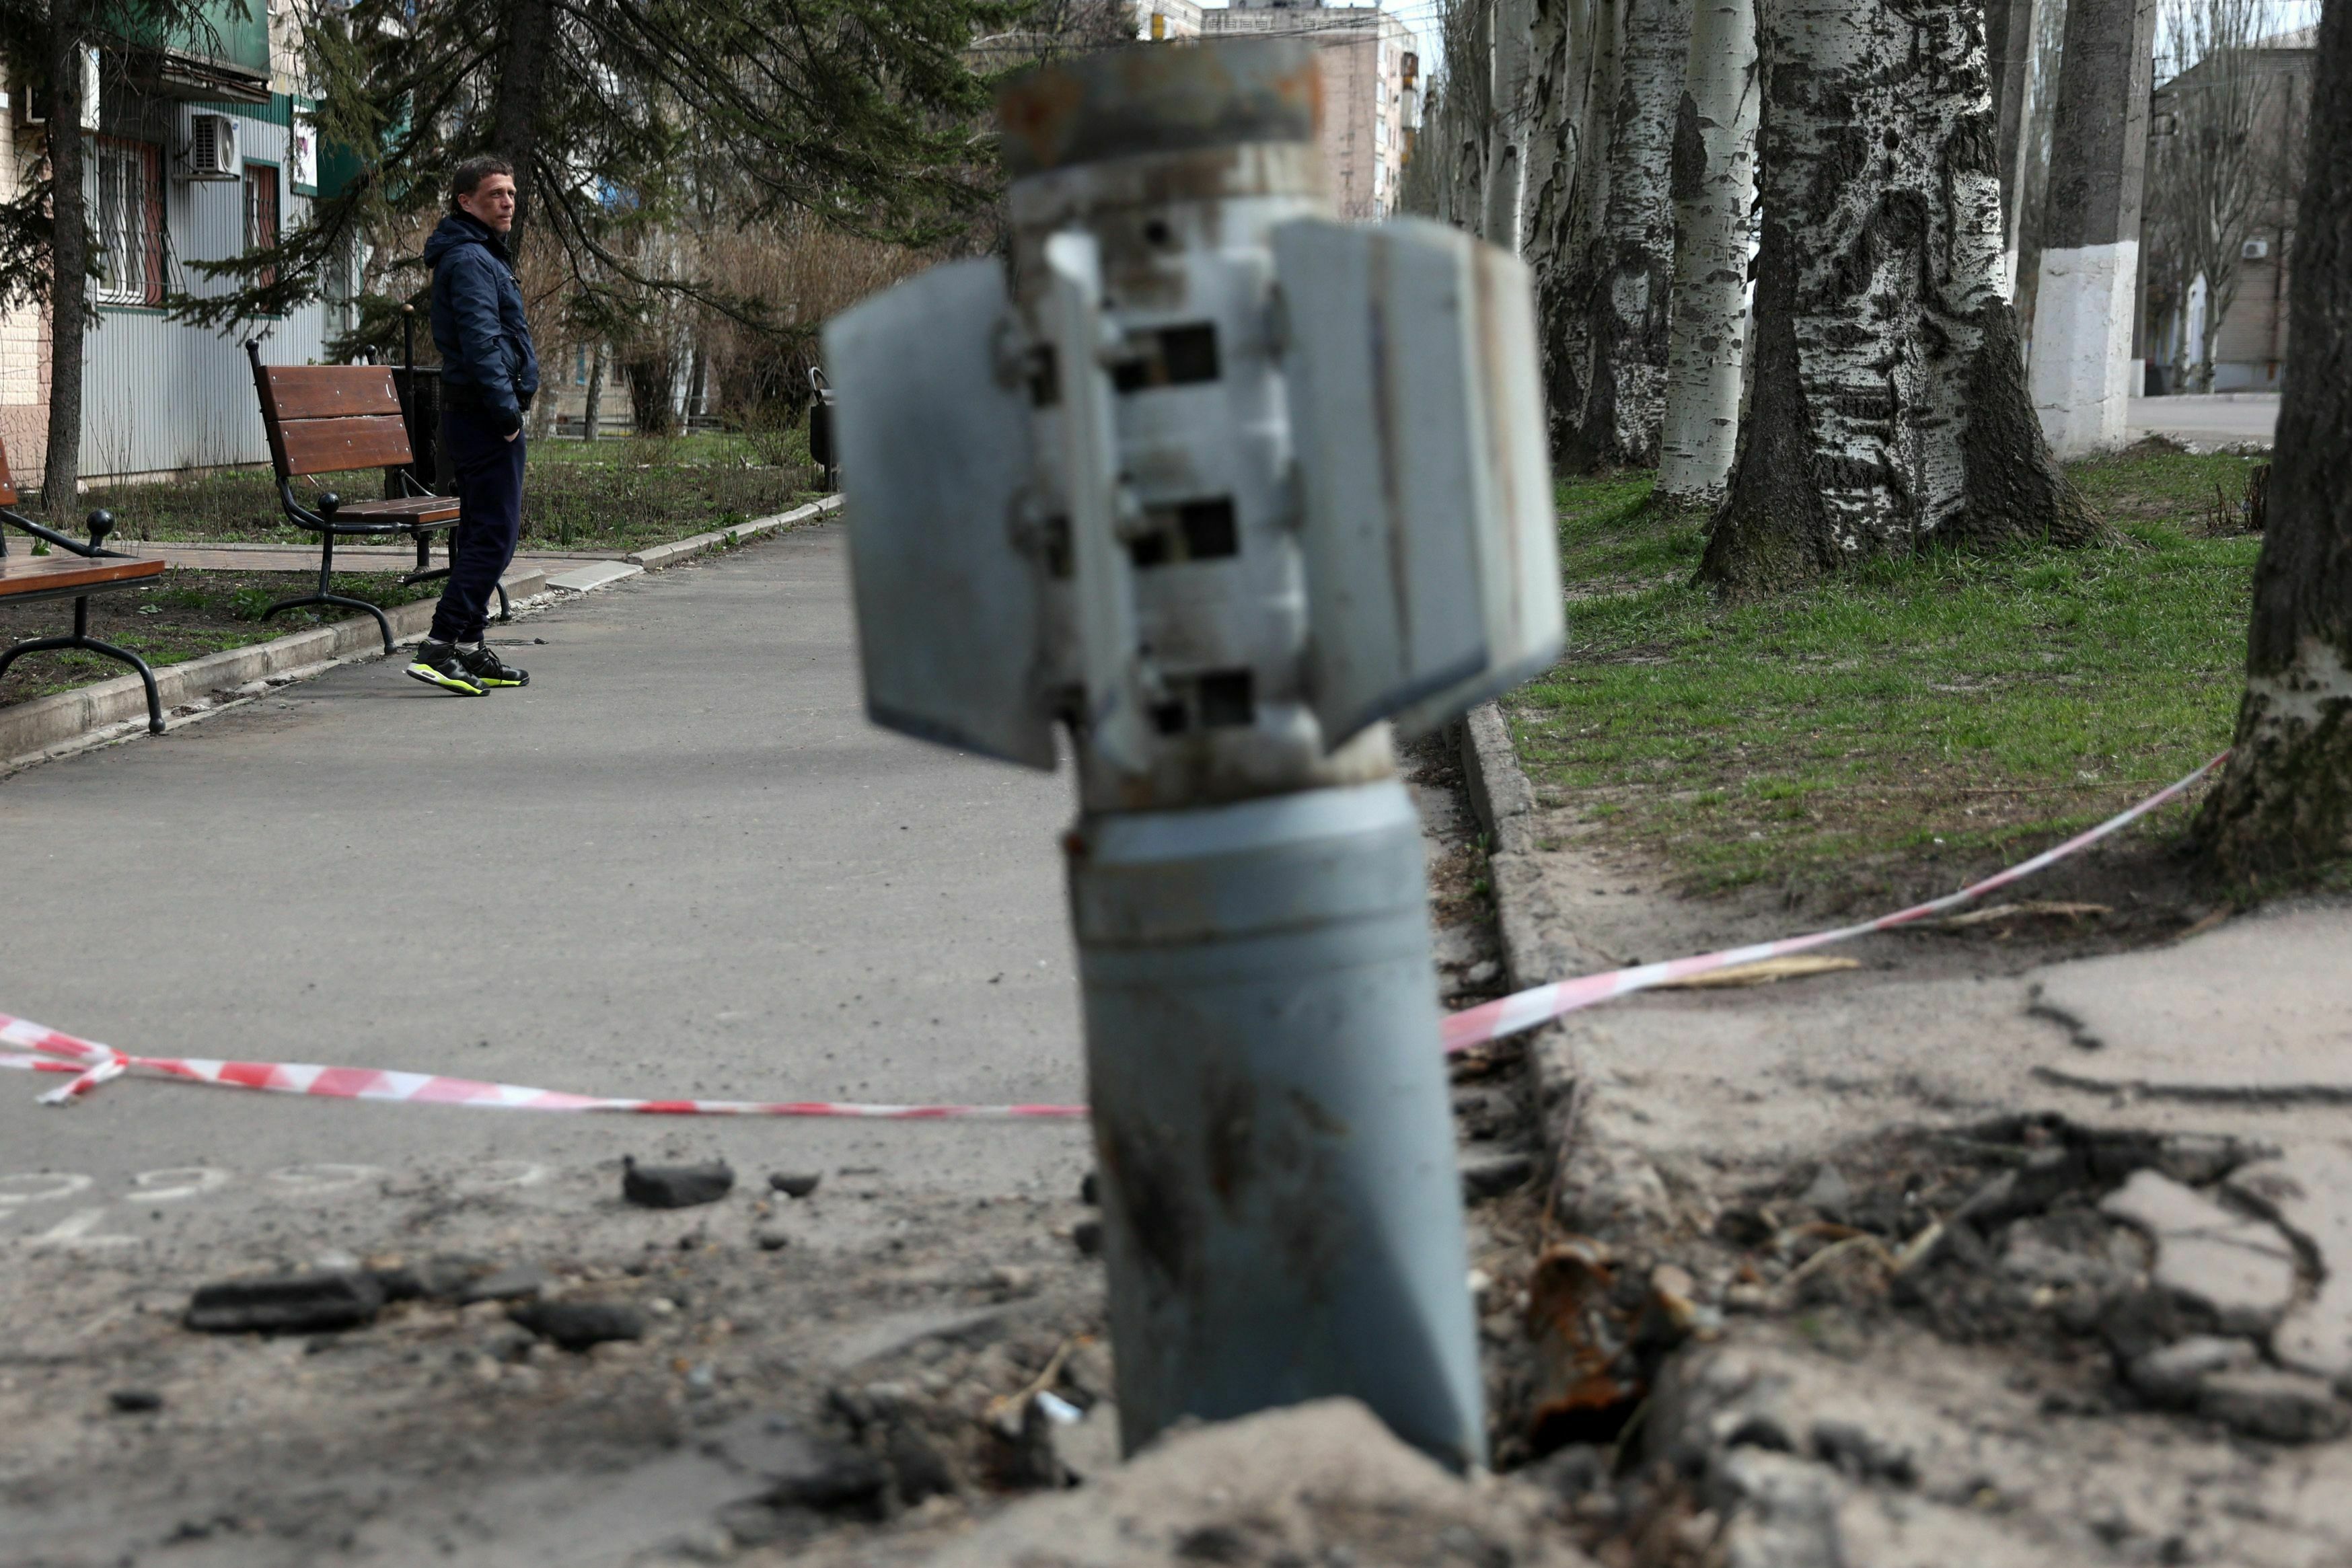 अमेरिकाले १ सय २० देशमा प्रतिबन्धित ‘क्लस्टर बम’ युक्रेन पठाउने